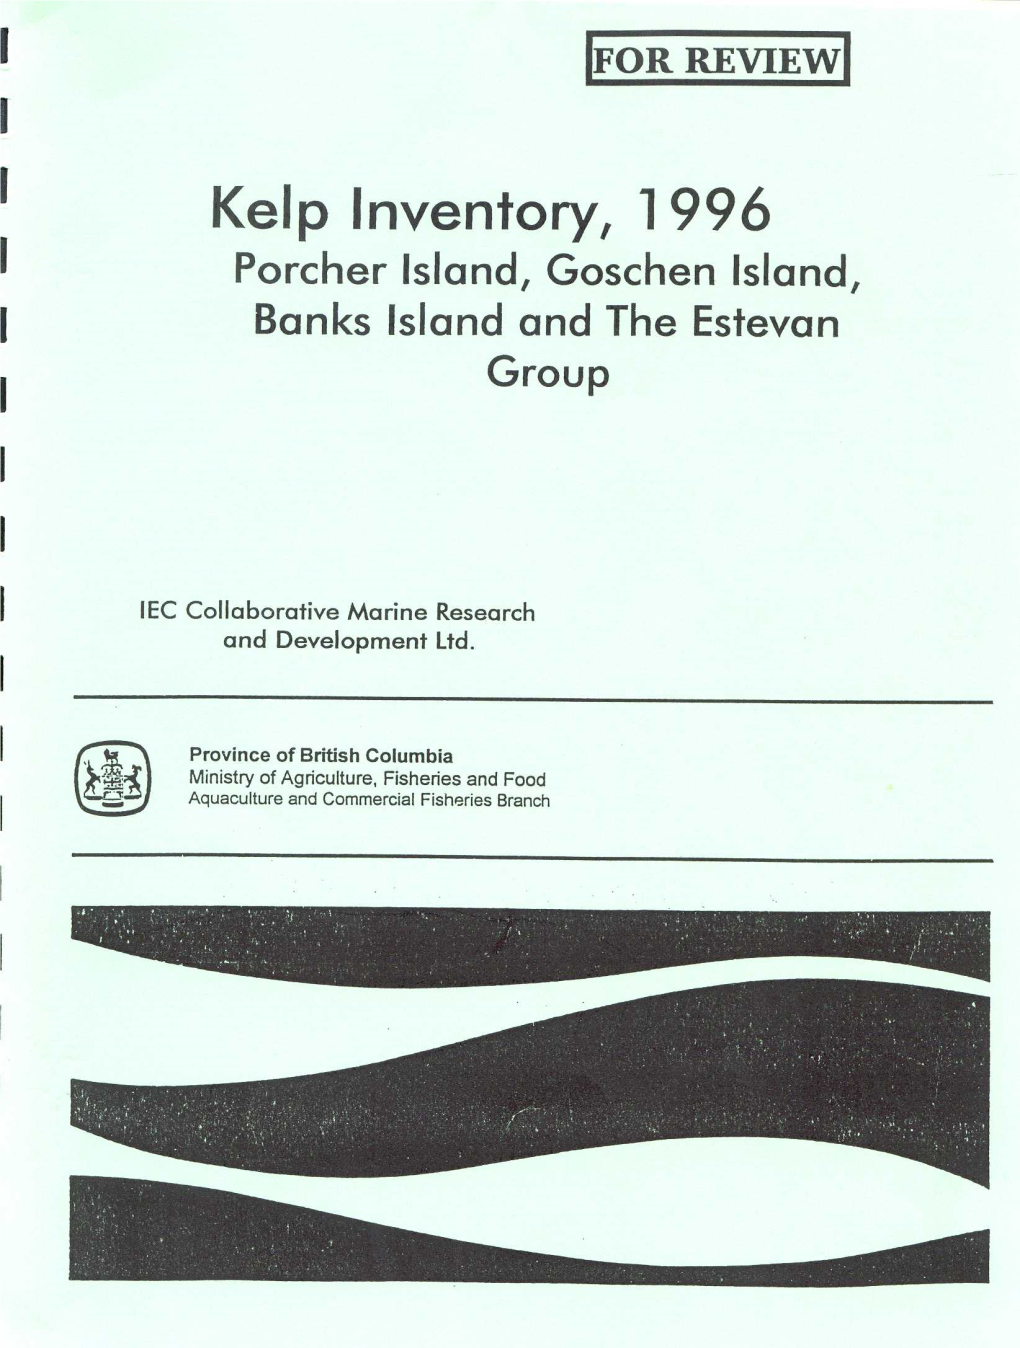 Kelp Inventory, 1996: Porcher Island, Groschen Island, Banks Island And